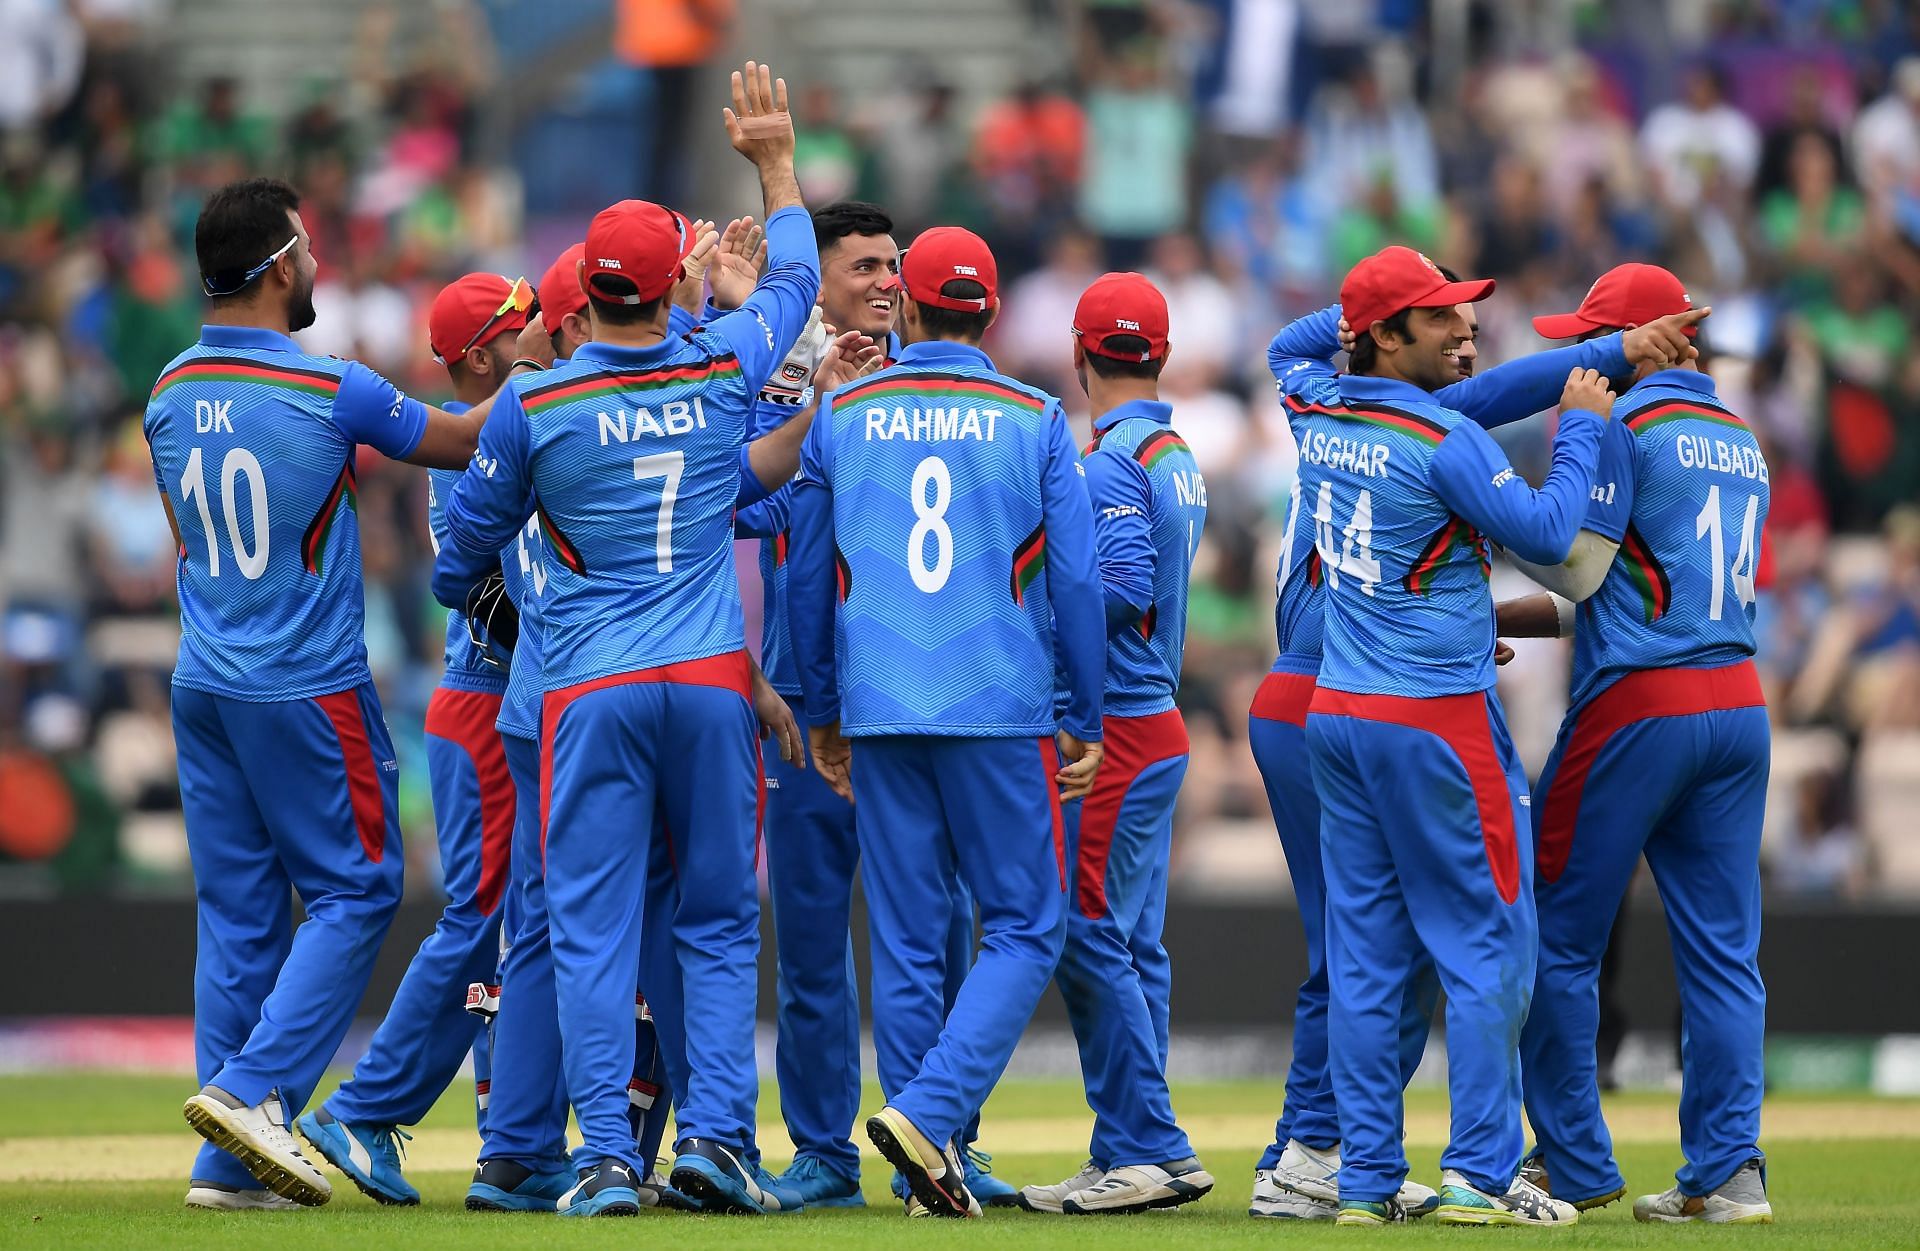 अफगानिस्तान की टीम तीन वनडे मैचों की सीरीज खेलेगी